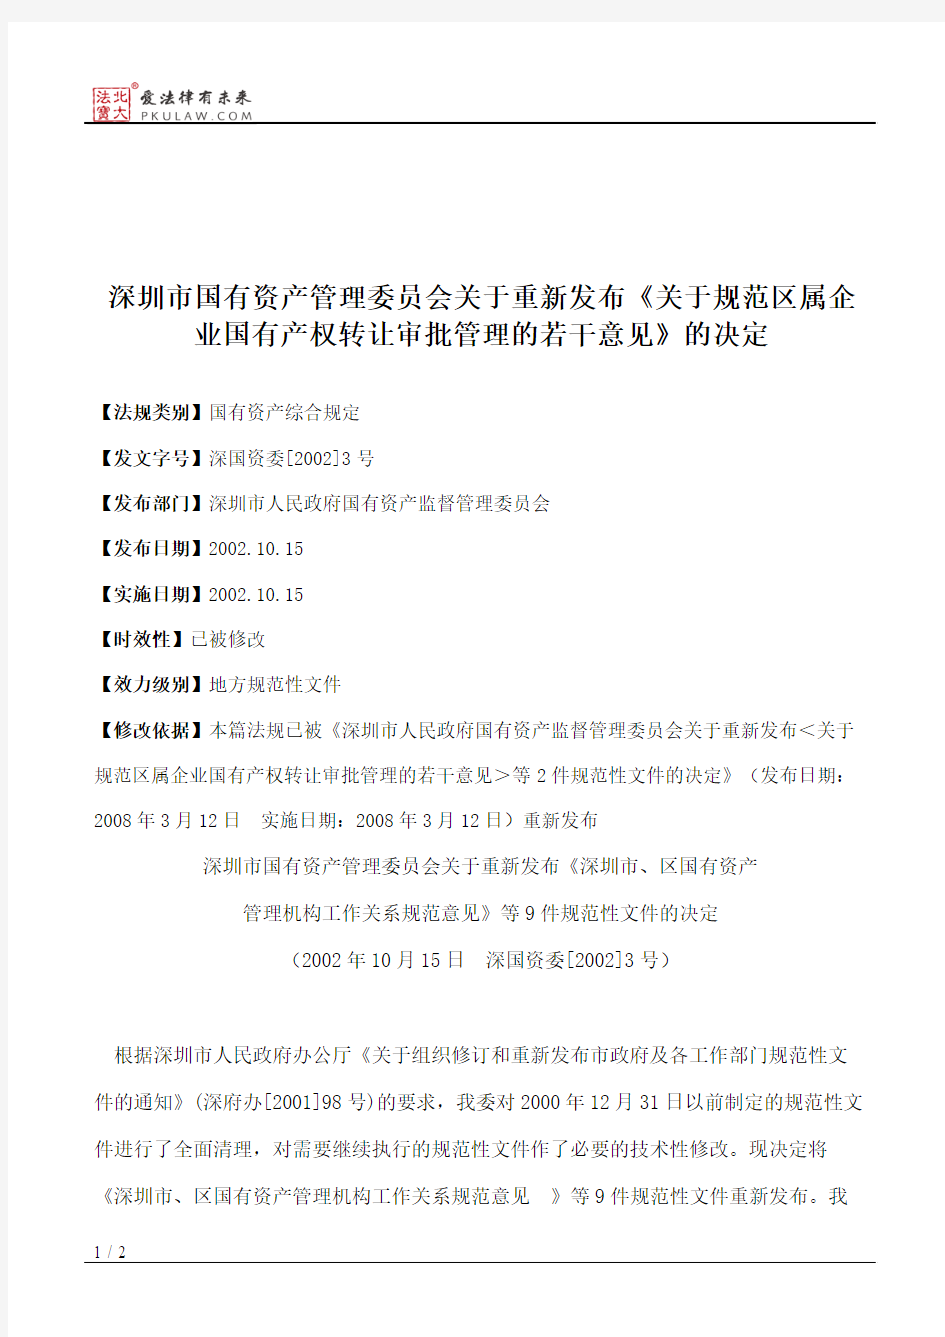 深圳市国有资产管理委员会关于重新发布《关于规范区属企业国有产